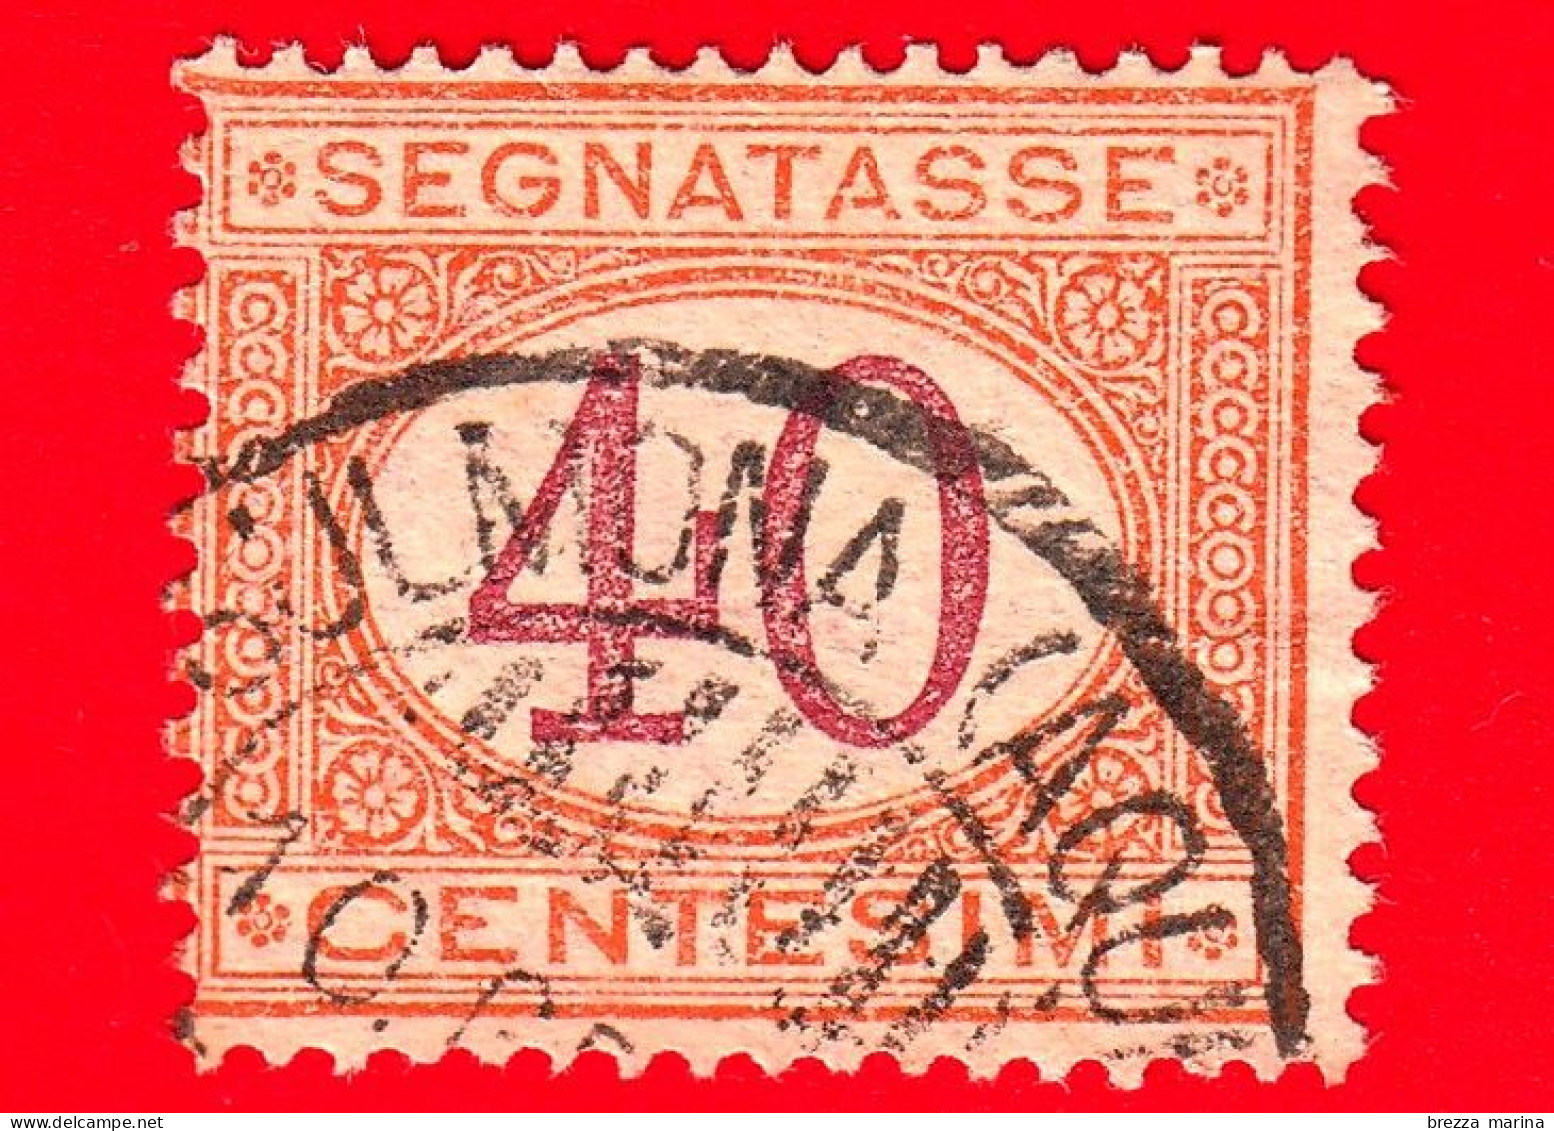 ITALIA - Usato -  1870 - 1890 - Segnatasse - Cifra Entro Un Ovale - 40 C. - Strafport